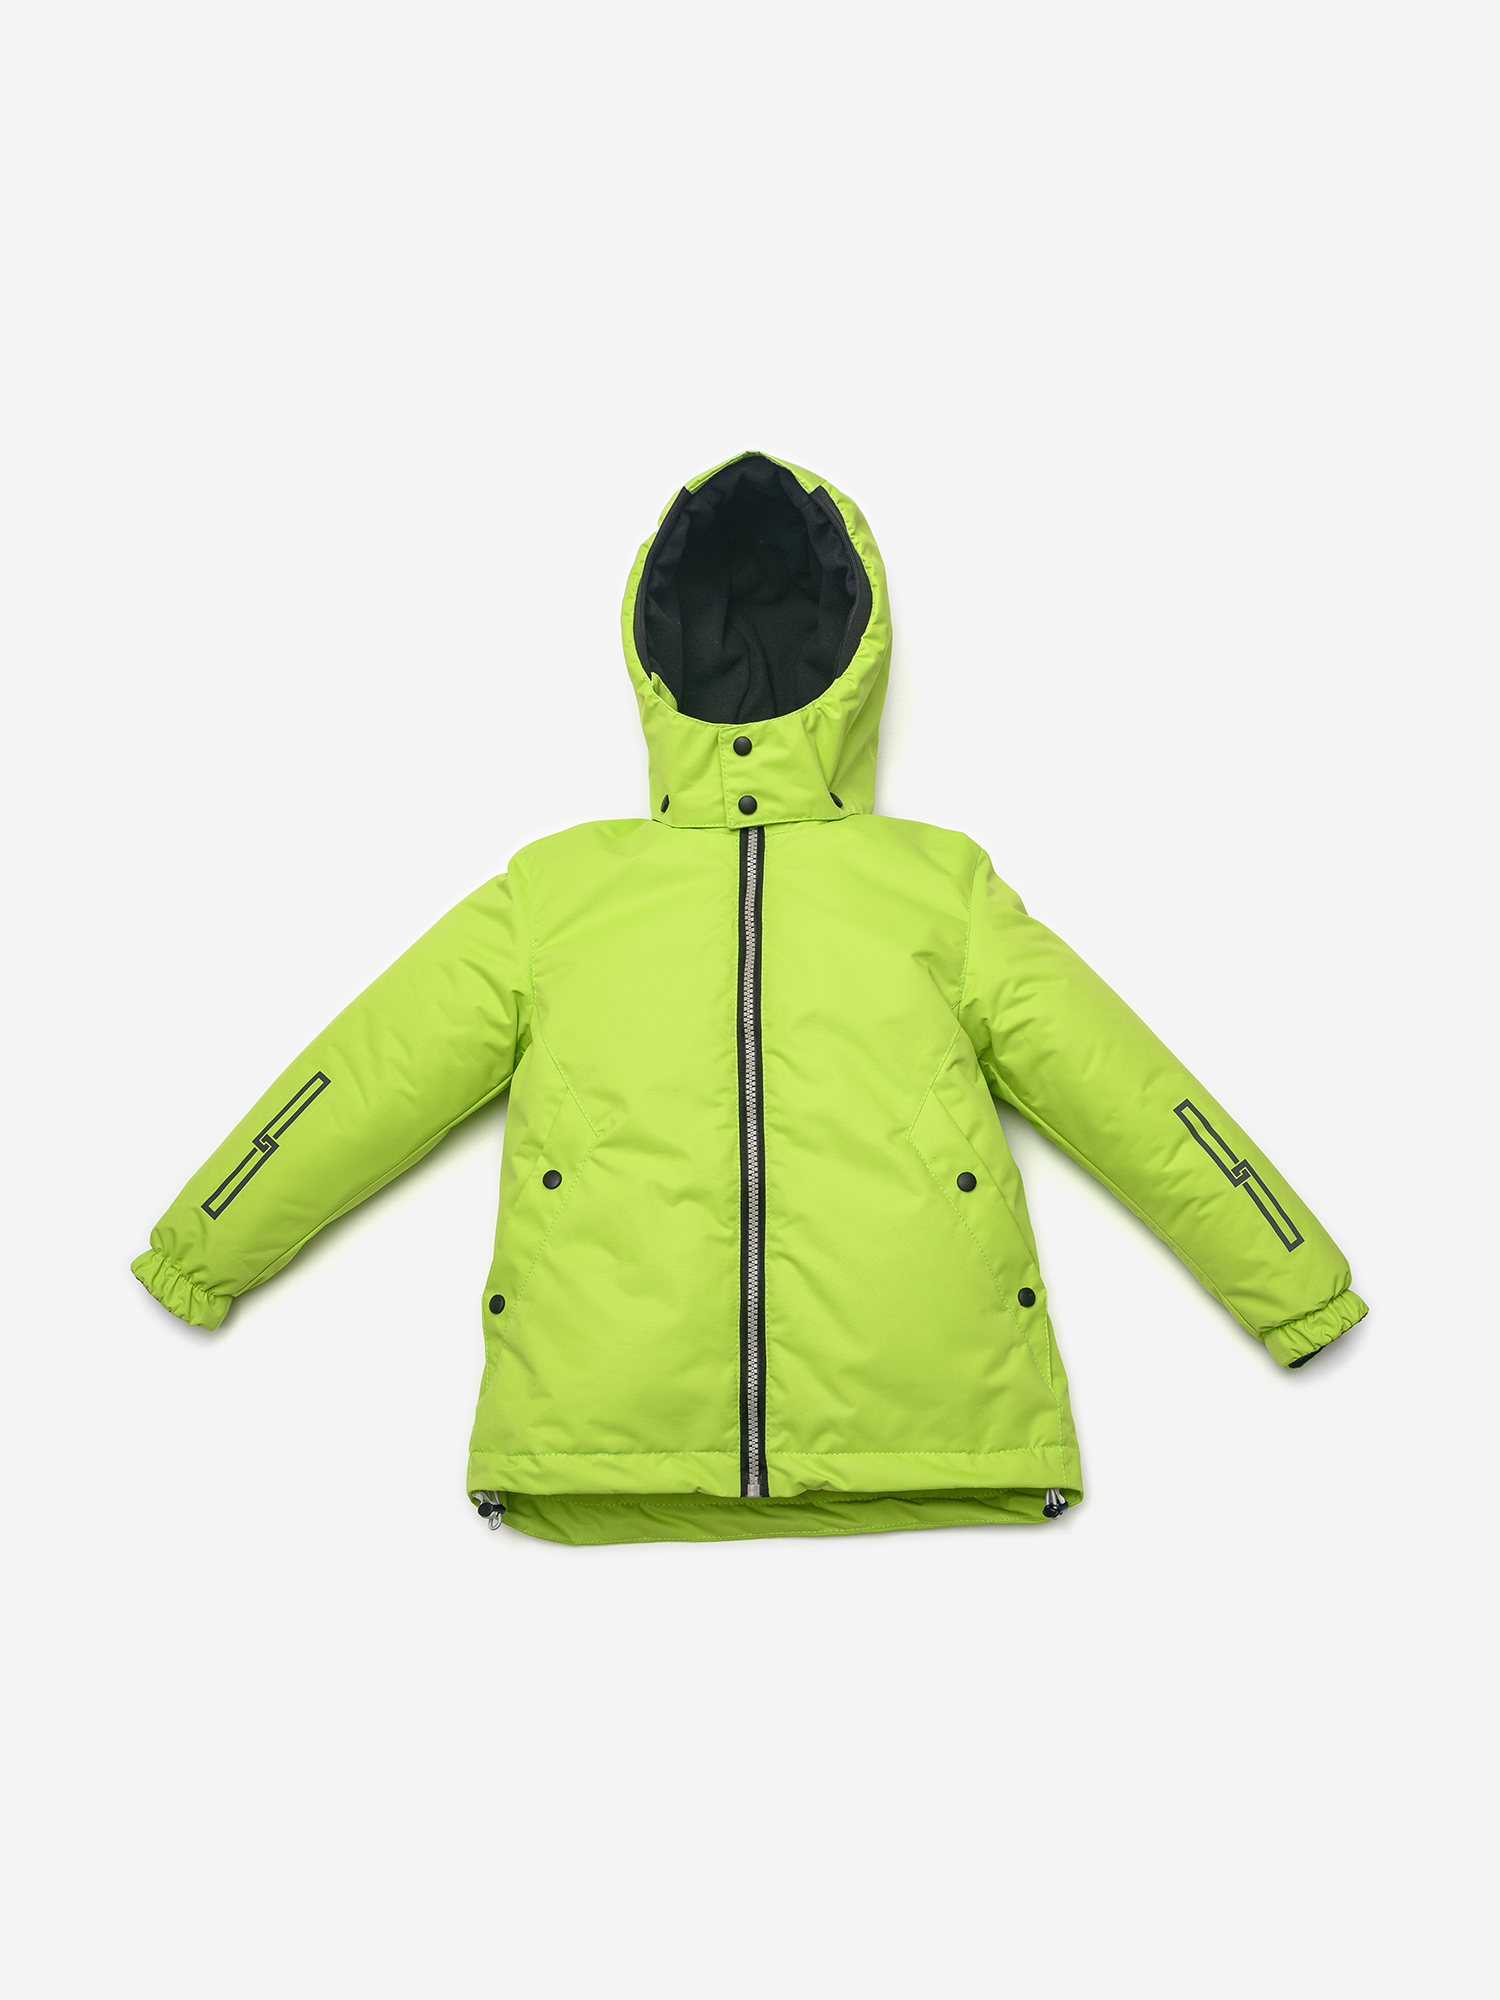 Куртка для мальчика ARTEL, Зеленый ветровка cофтшелл softsheli для мальчика artel зеленый